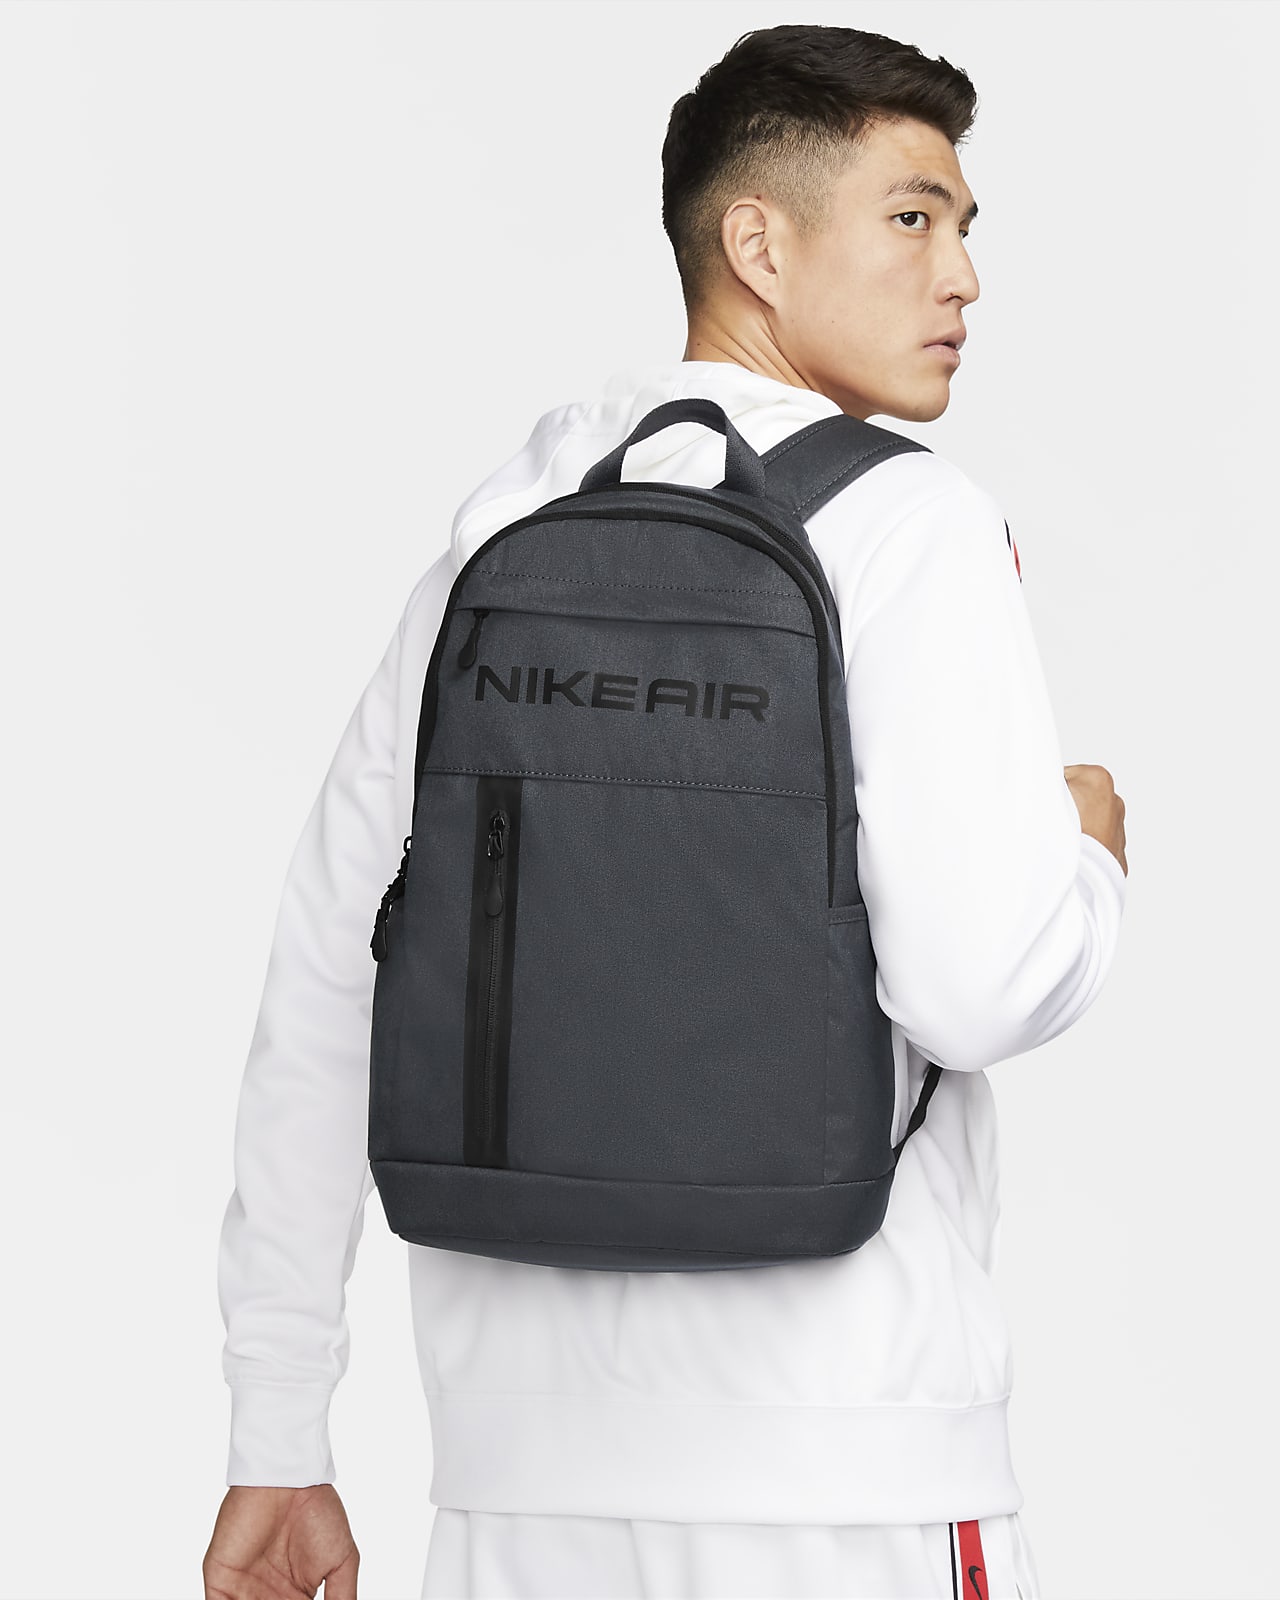 Nike Elemental Premium 背包 (21 公升)